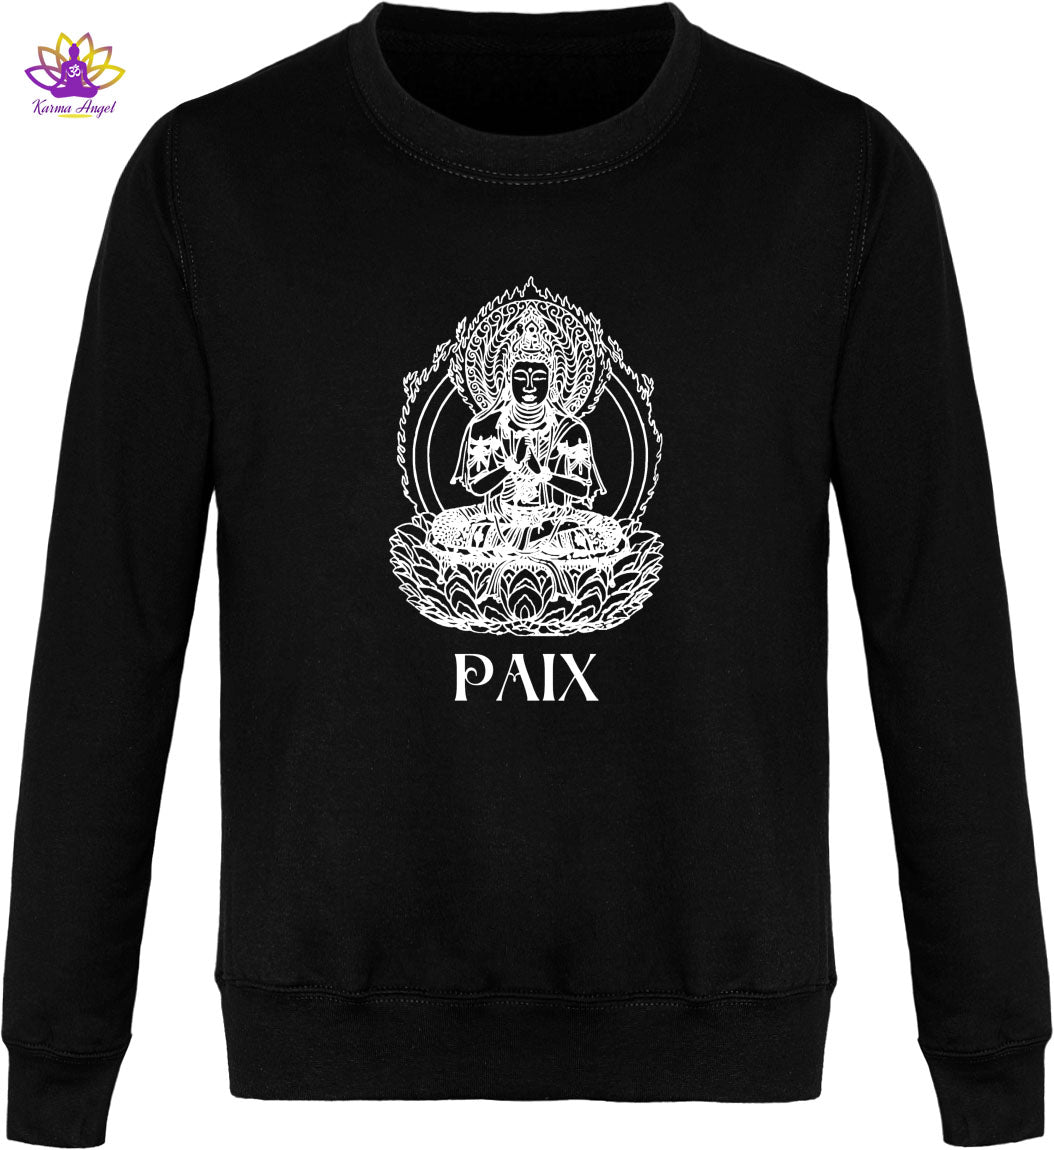 "Bouddha inspirant" - Sweatshirt homme en coton bio, plusieurs coloris 